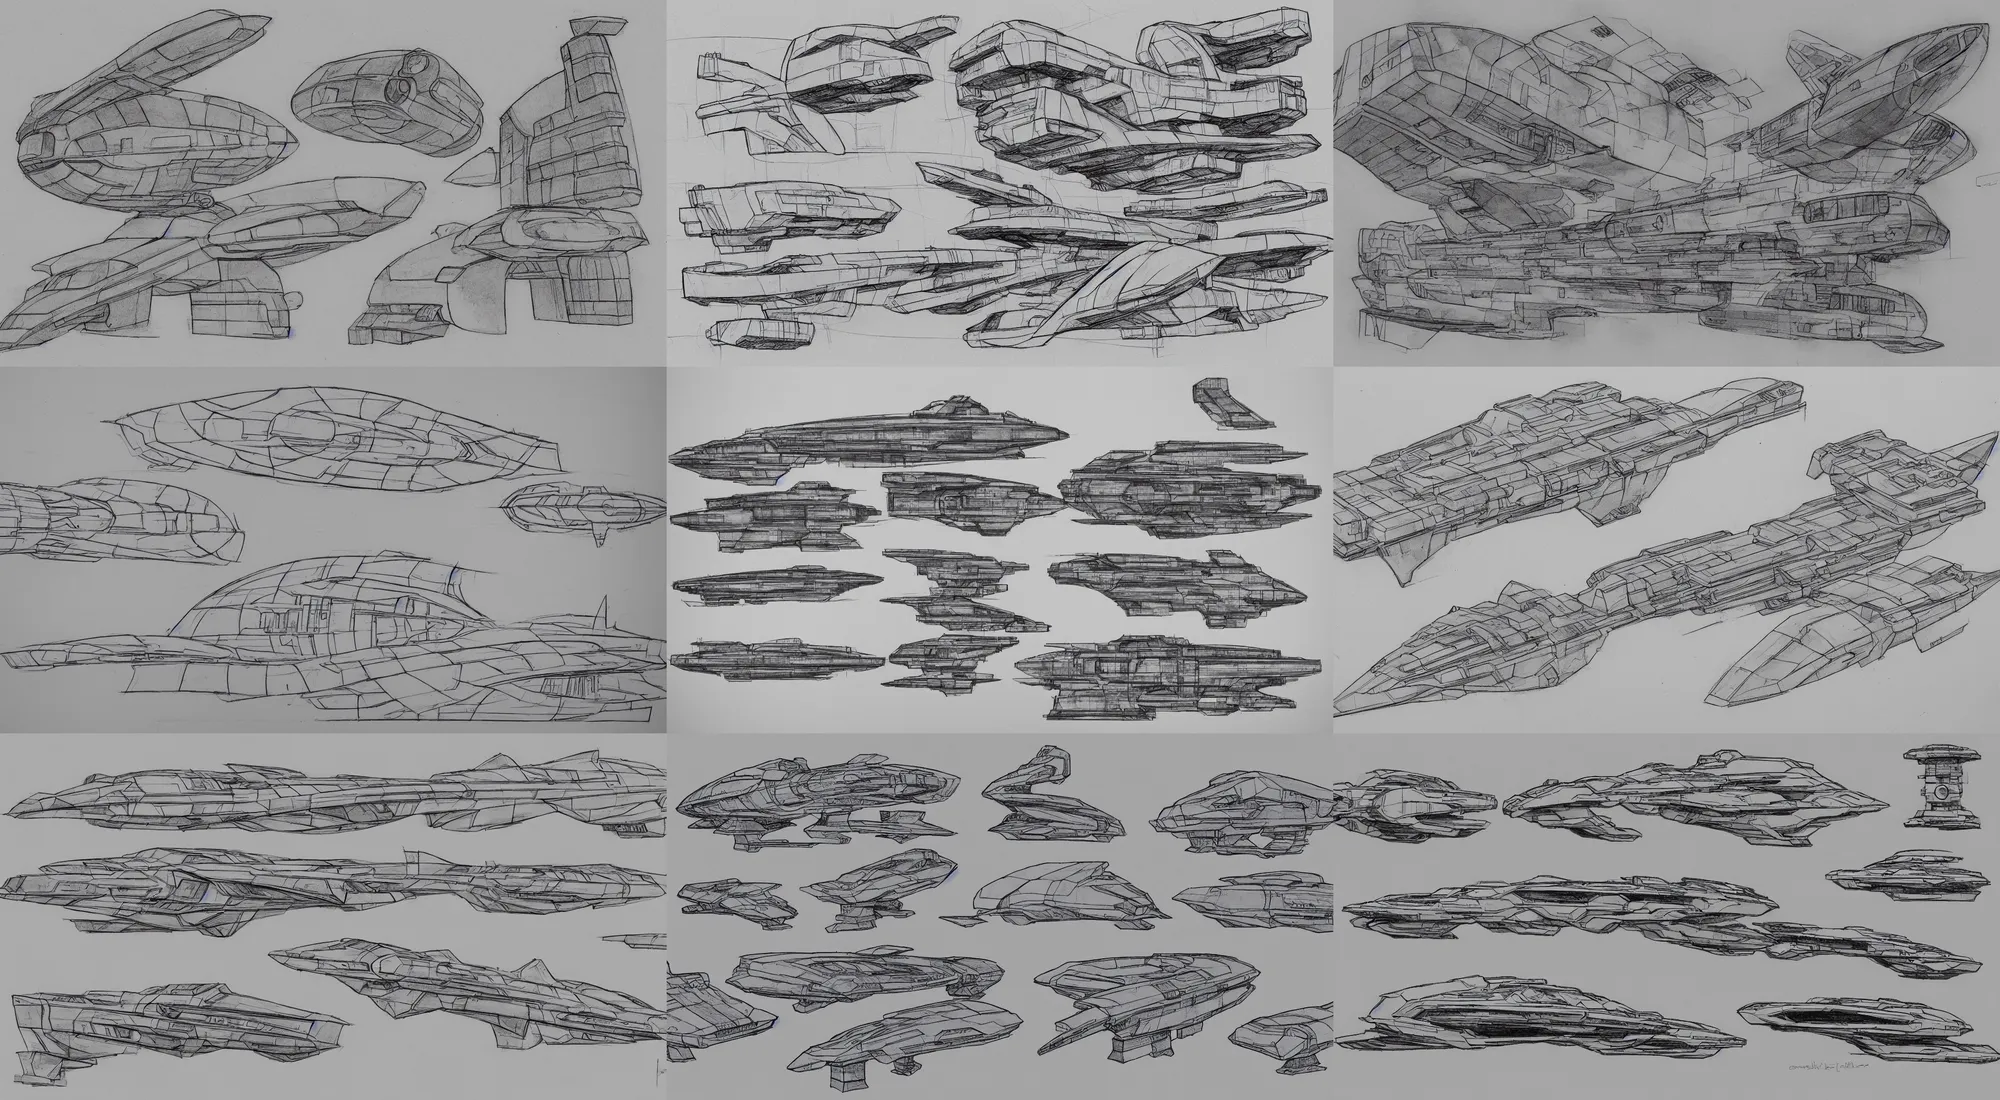 Prompt: spaceship sketches, brutalism